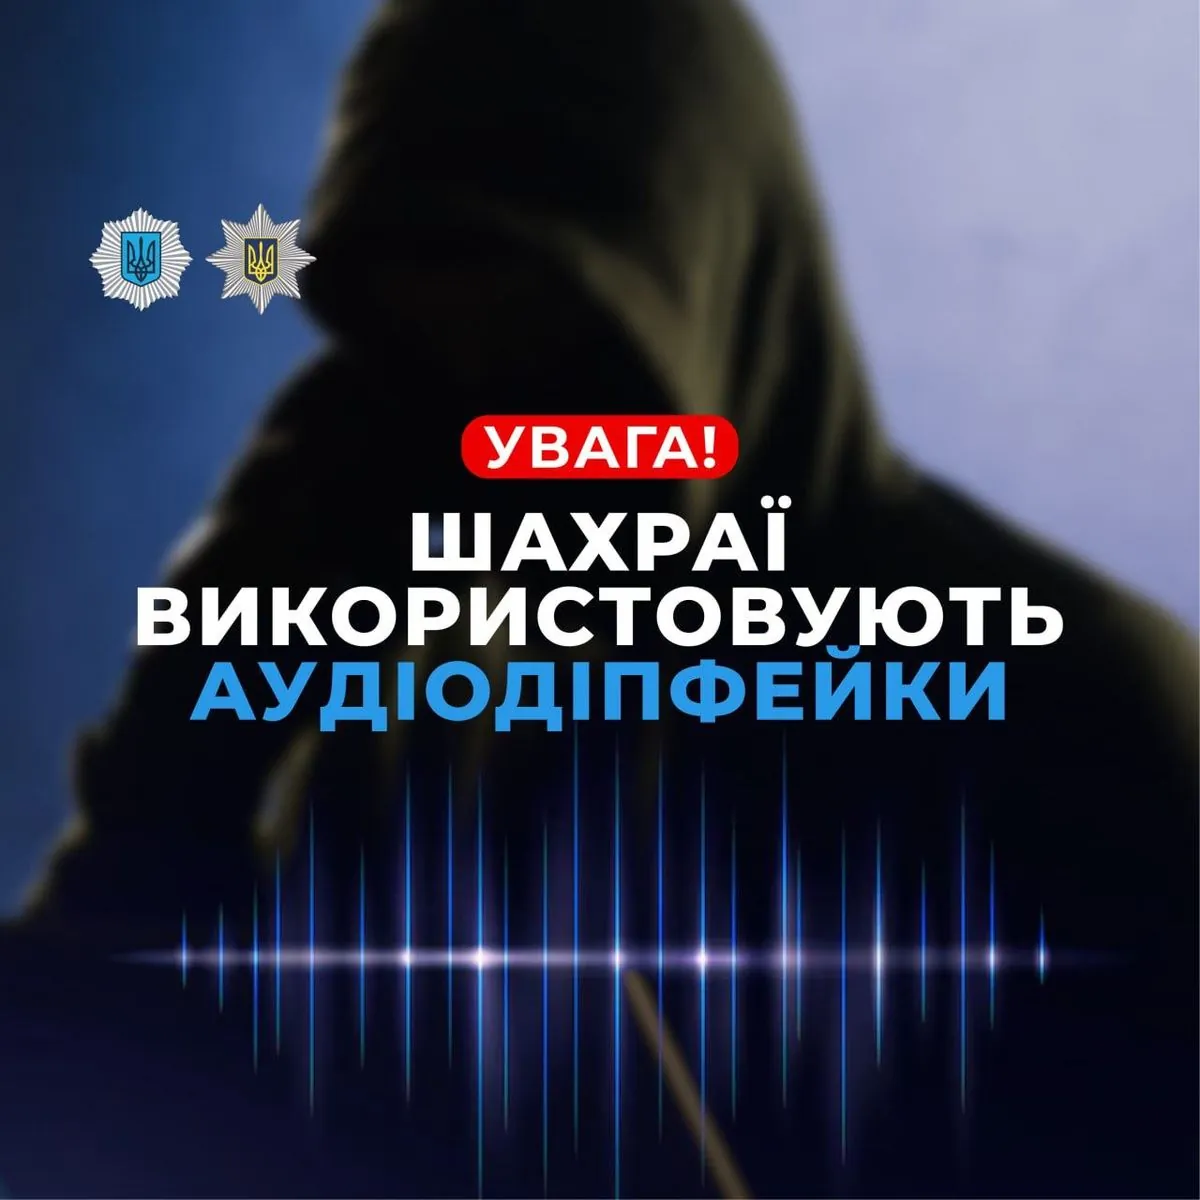 МВД предупреждает о новых методах кибермошенничества с аудиодипфейками